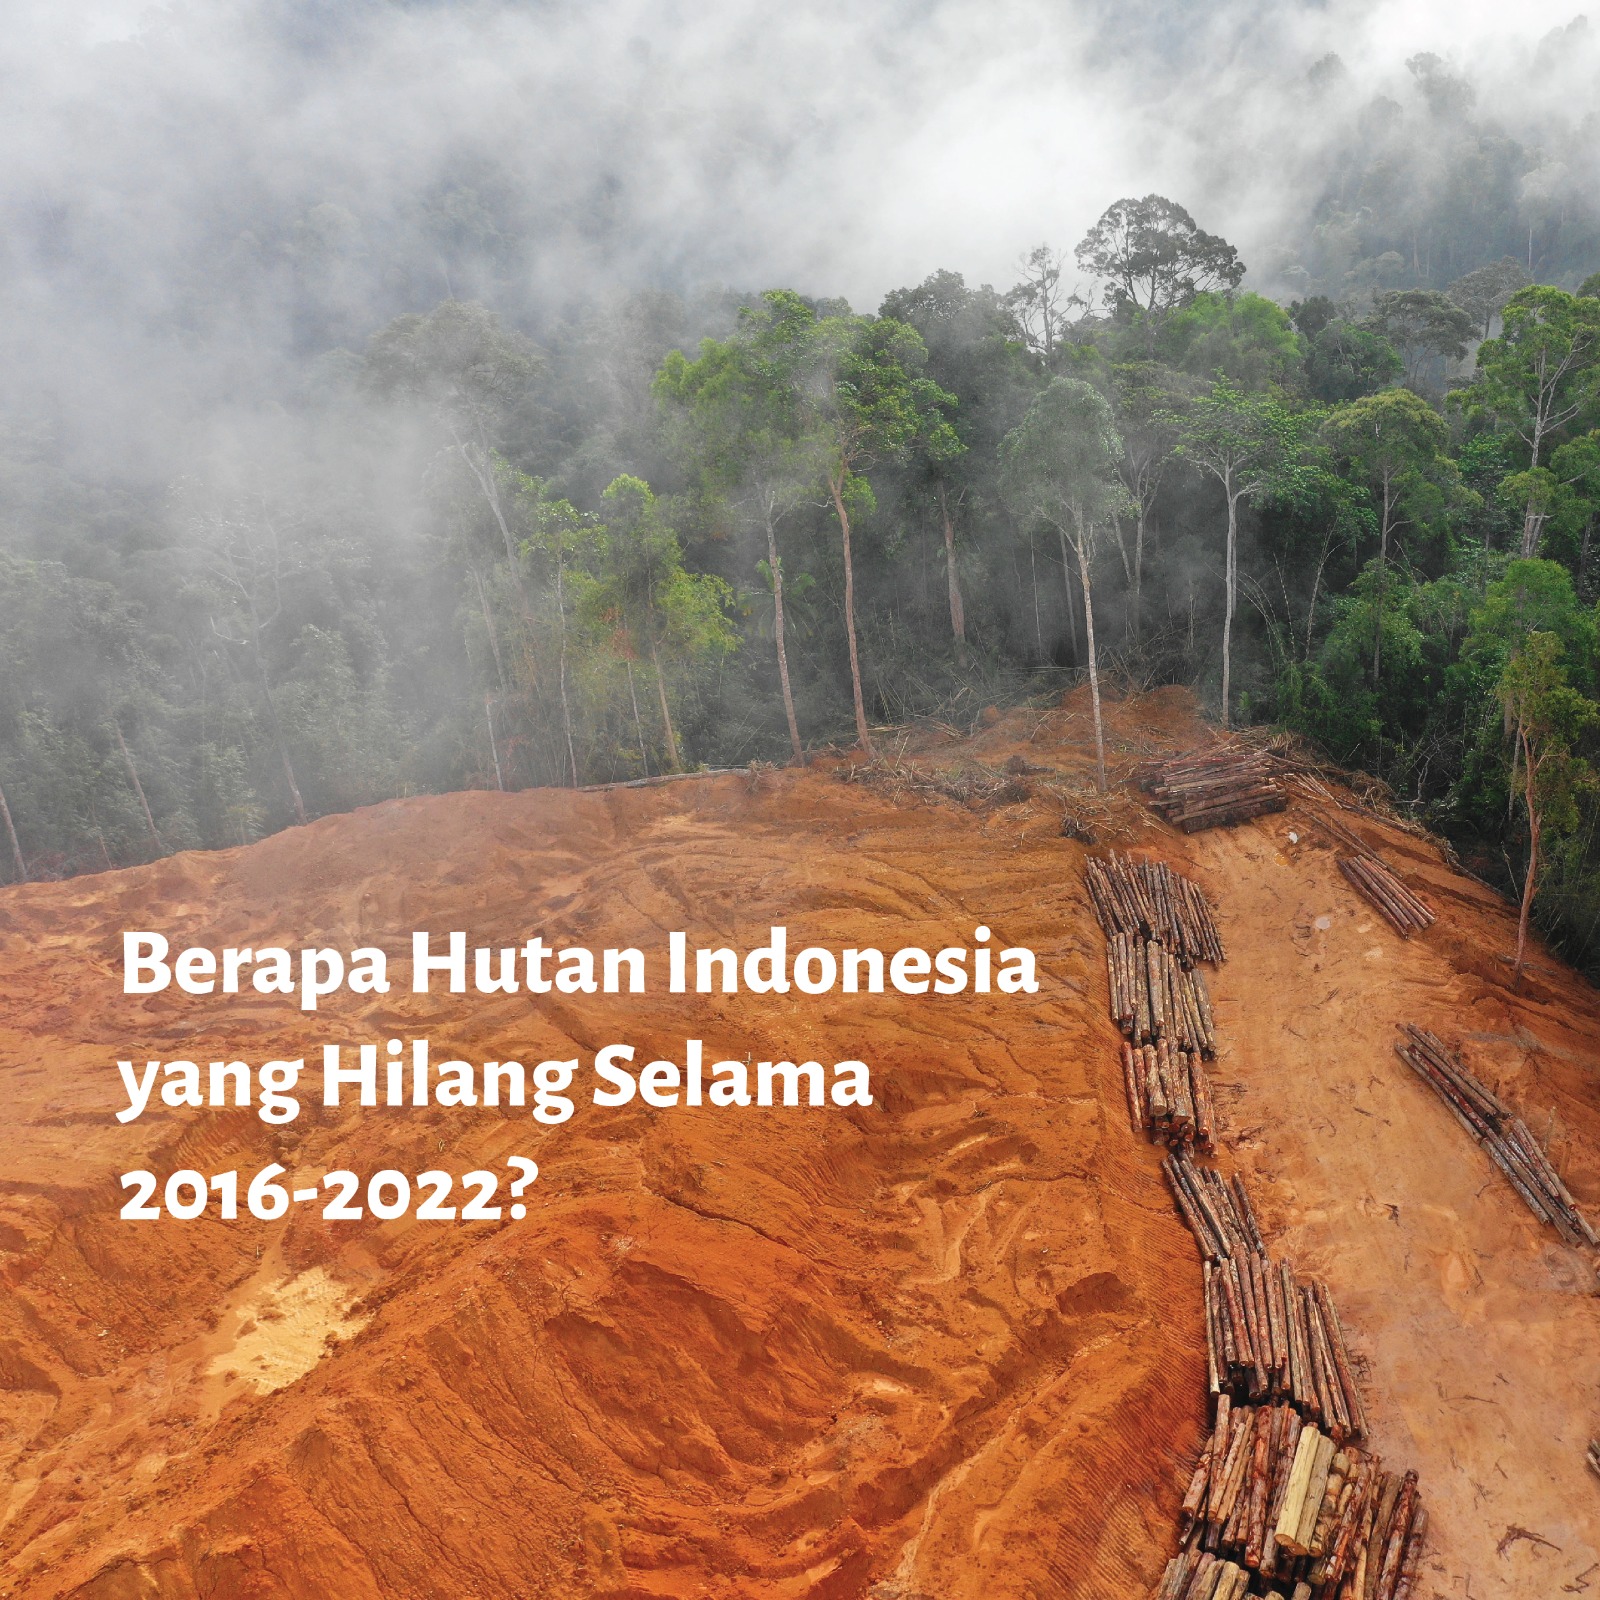 Berapa Hutan Indonesia yang Hilang Selama 2016-2022?